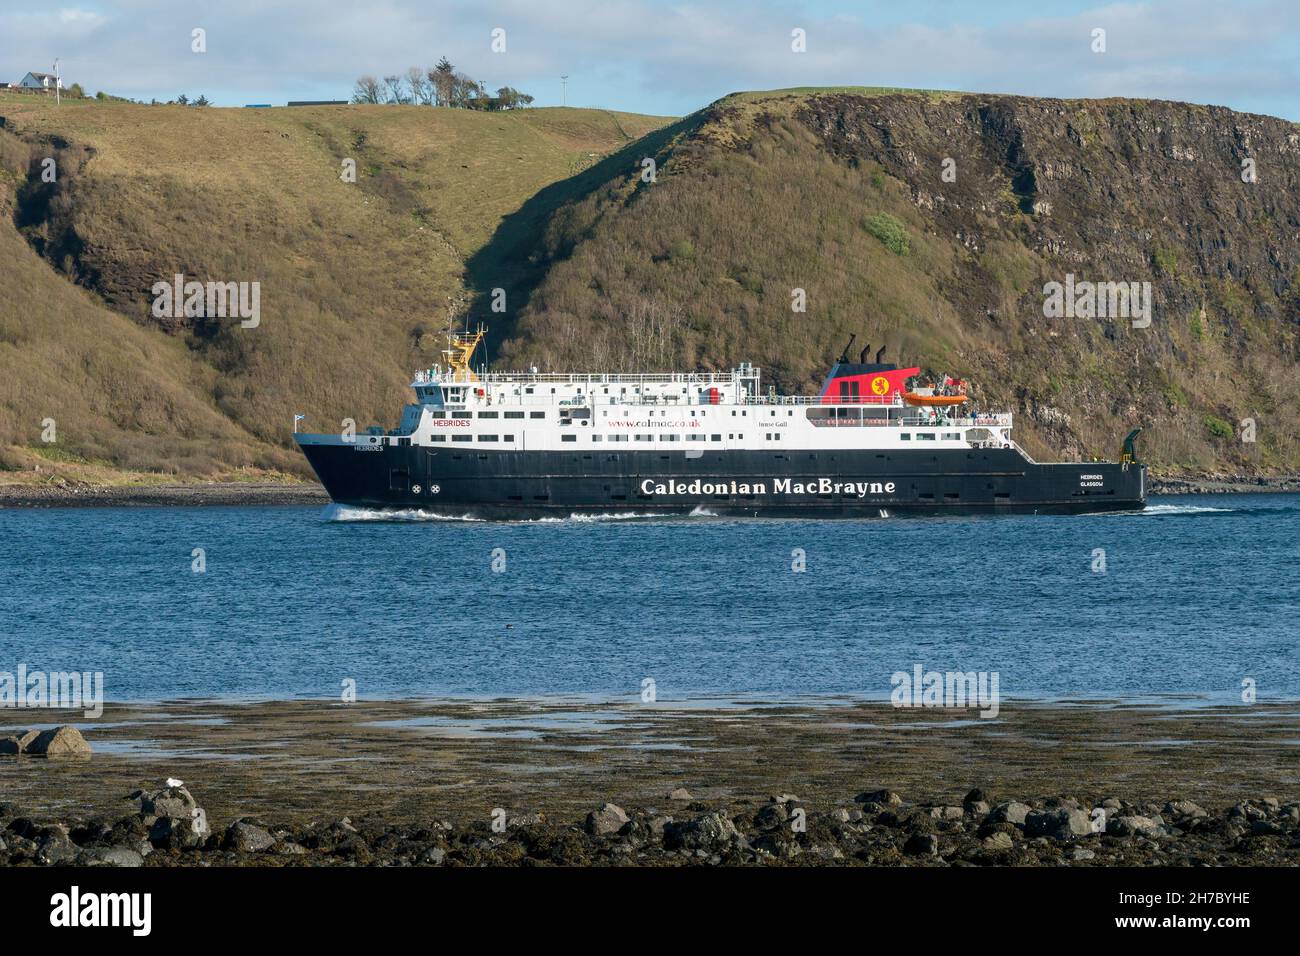 Hebrides Caledonian MacBrayne rollt von Tarbert aus auf die Autofähre und nähert sich dem Fährterminal Uig, Isle of Skye, Schottland, Großbritannien. Stockfoto